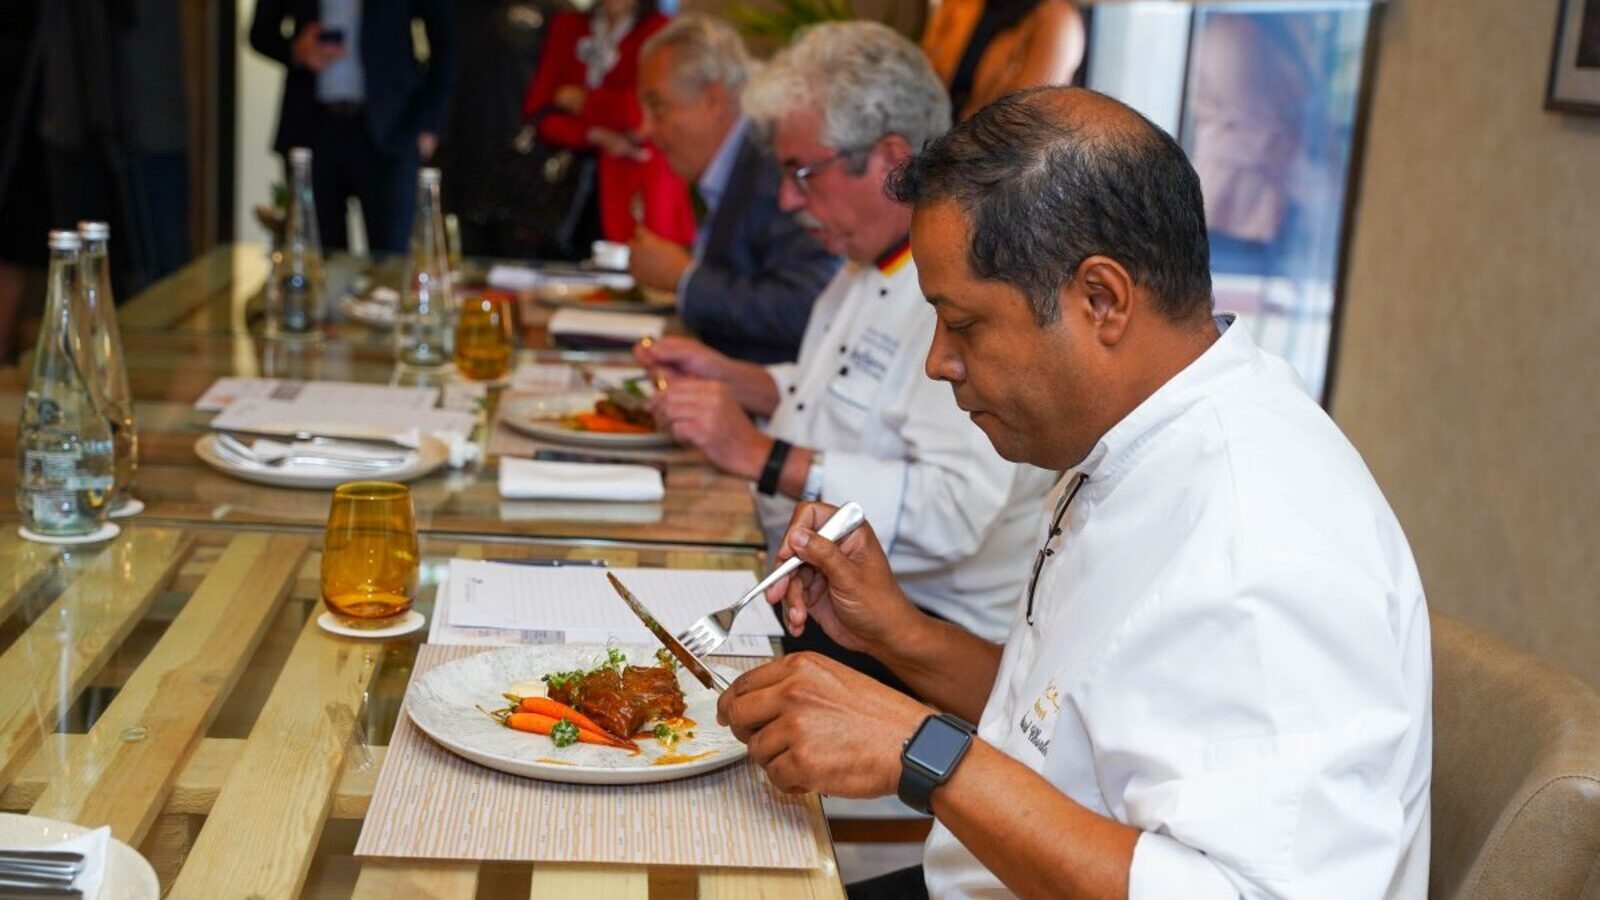 Grant Marais, chef du restaurant “Publique” se qualifie pour la compétition culinaire de dattes à Milan